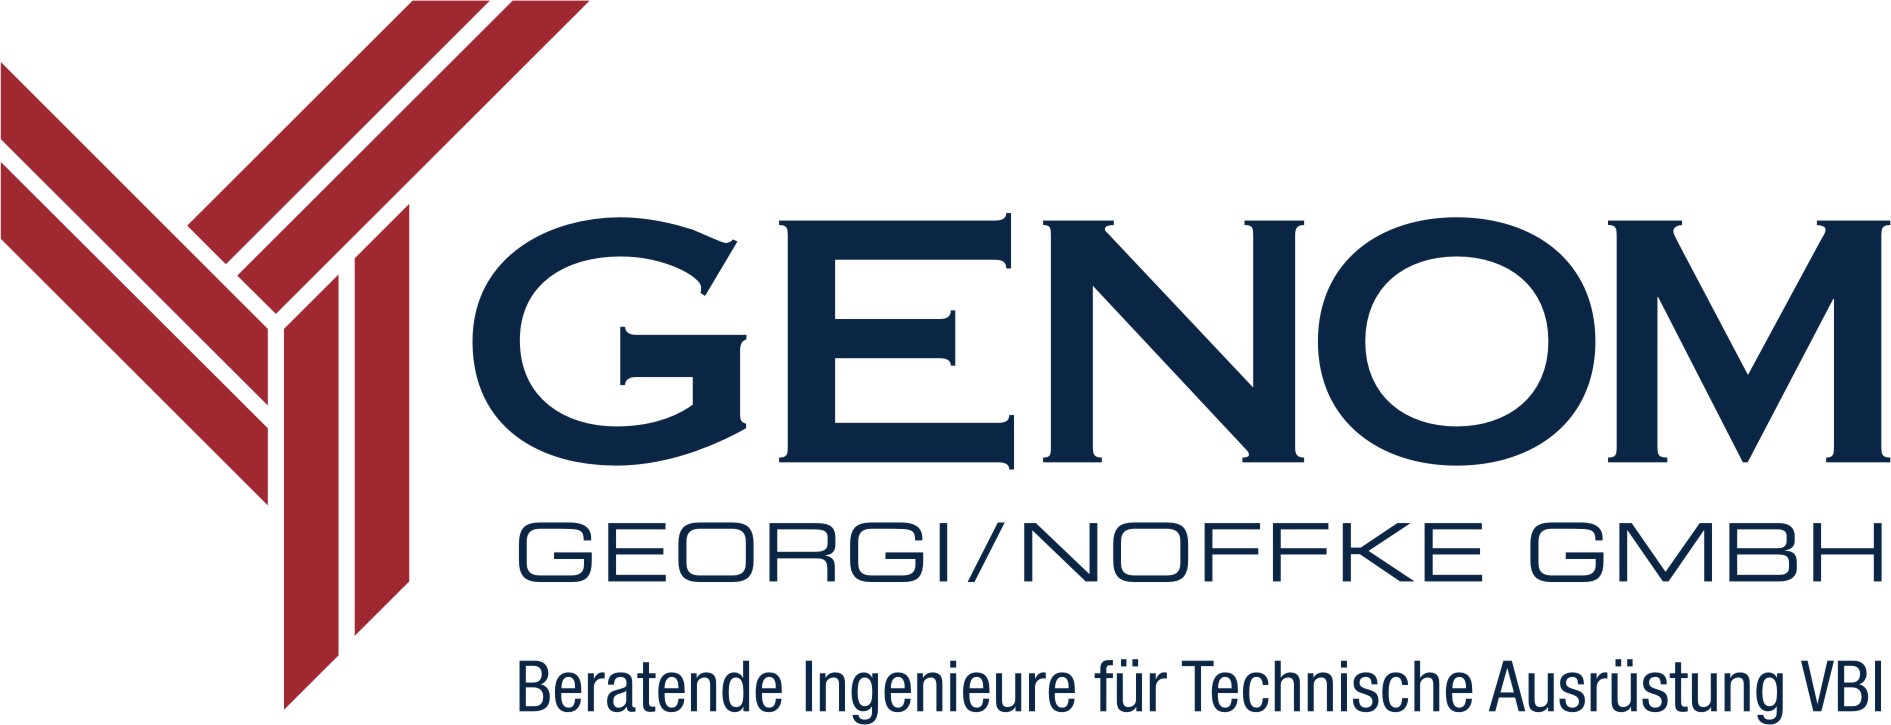 Impressum der GENOM Georgi / Noffke GmbH | Zittau